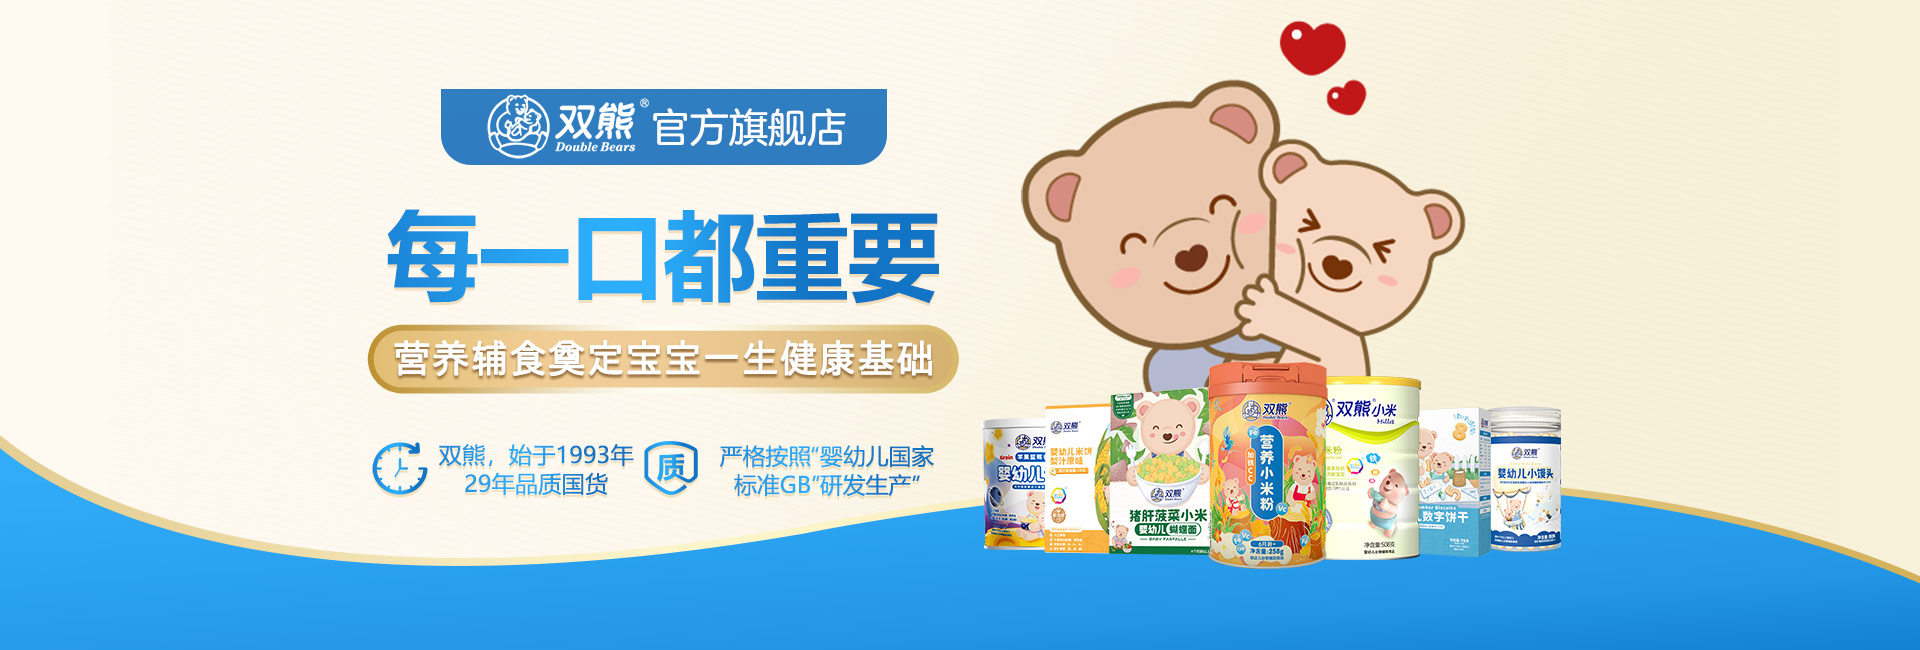 双熊米粉致力于成为中国婴幼儿辅食的领航者